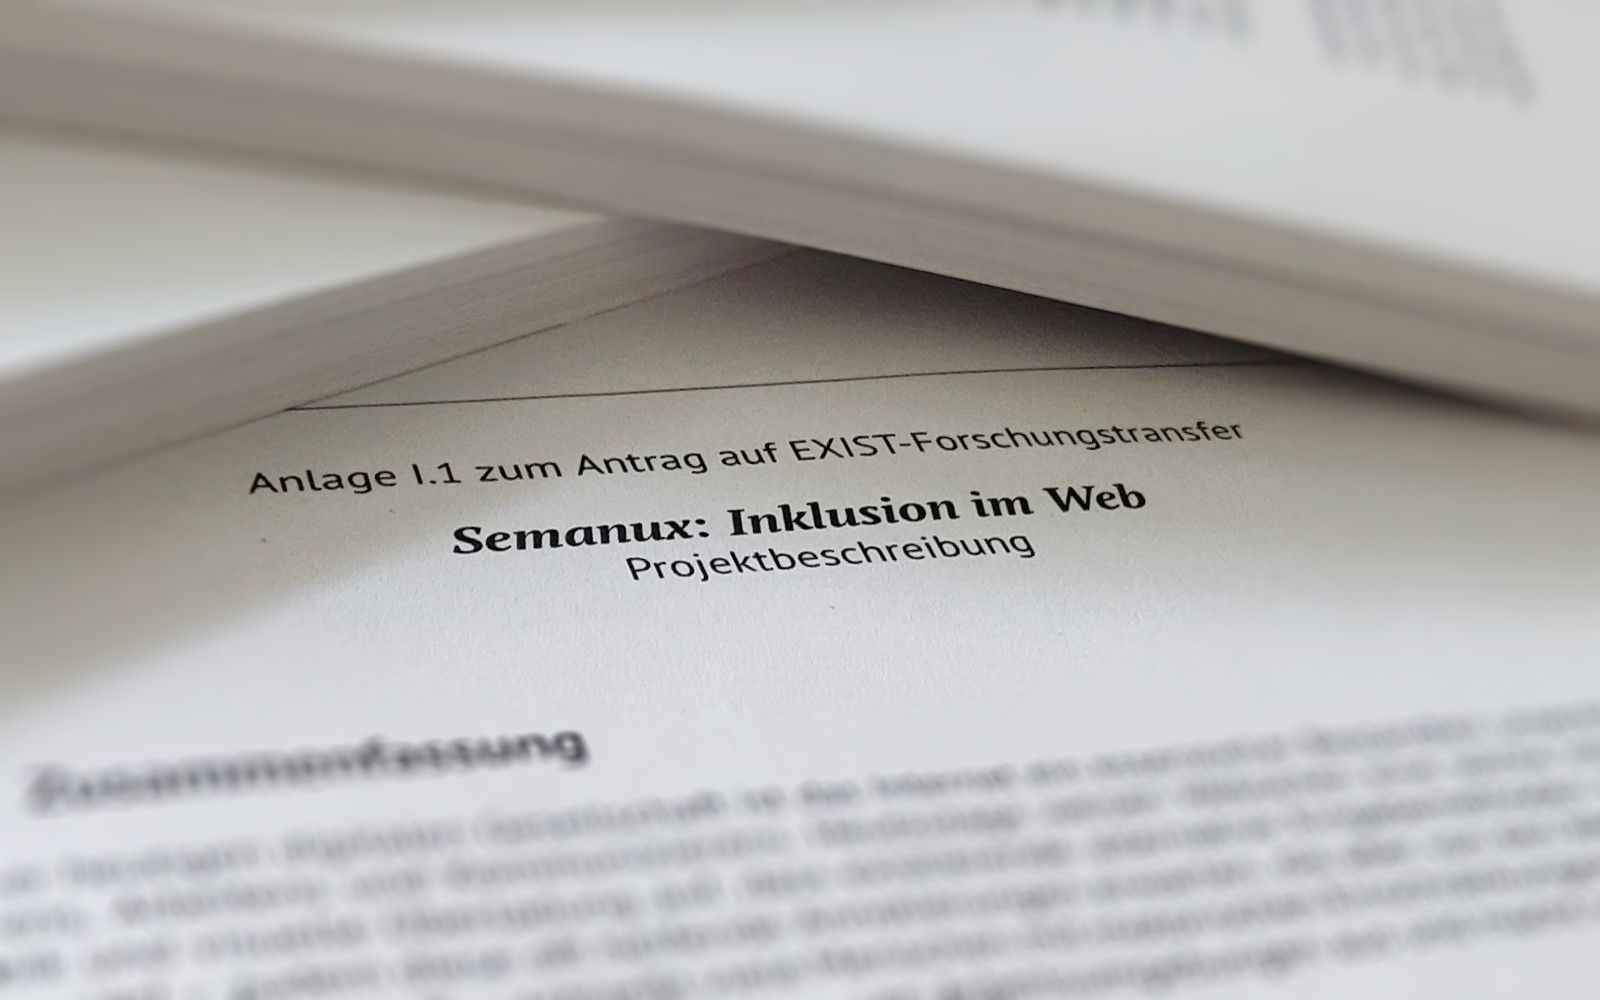 Closeup of a document showing the headline "Anlage I.1 zum Antrag auf EXIST-Forschungstransfer. Semanux: Inklusion im Web. Projektbeschreibung."